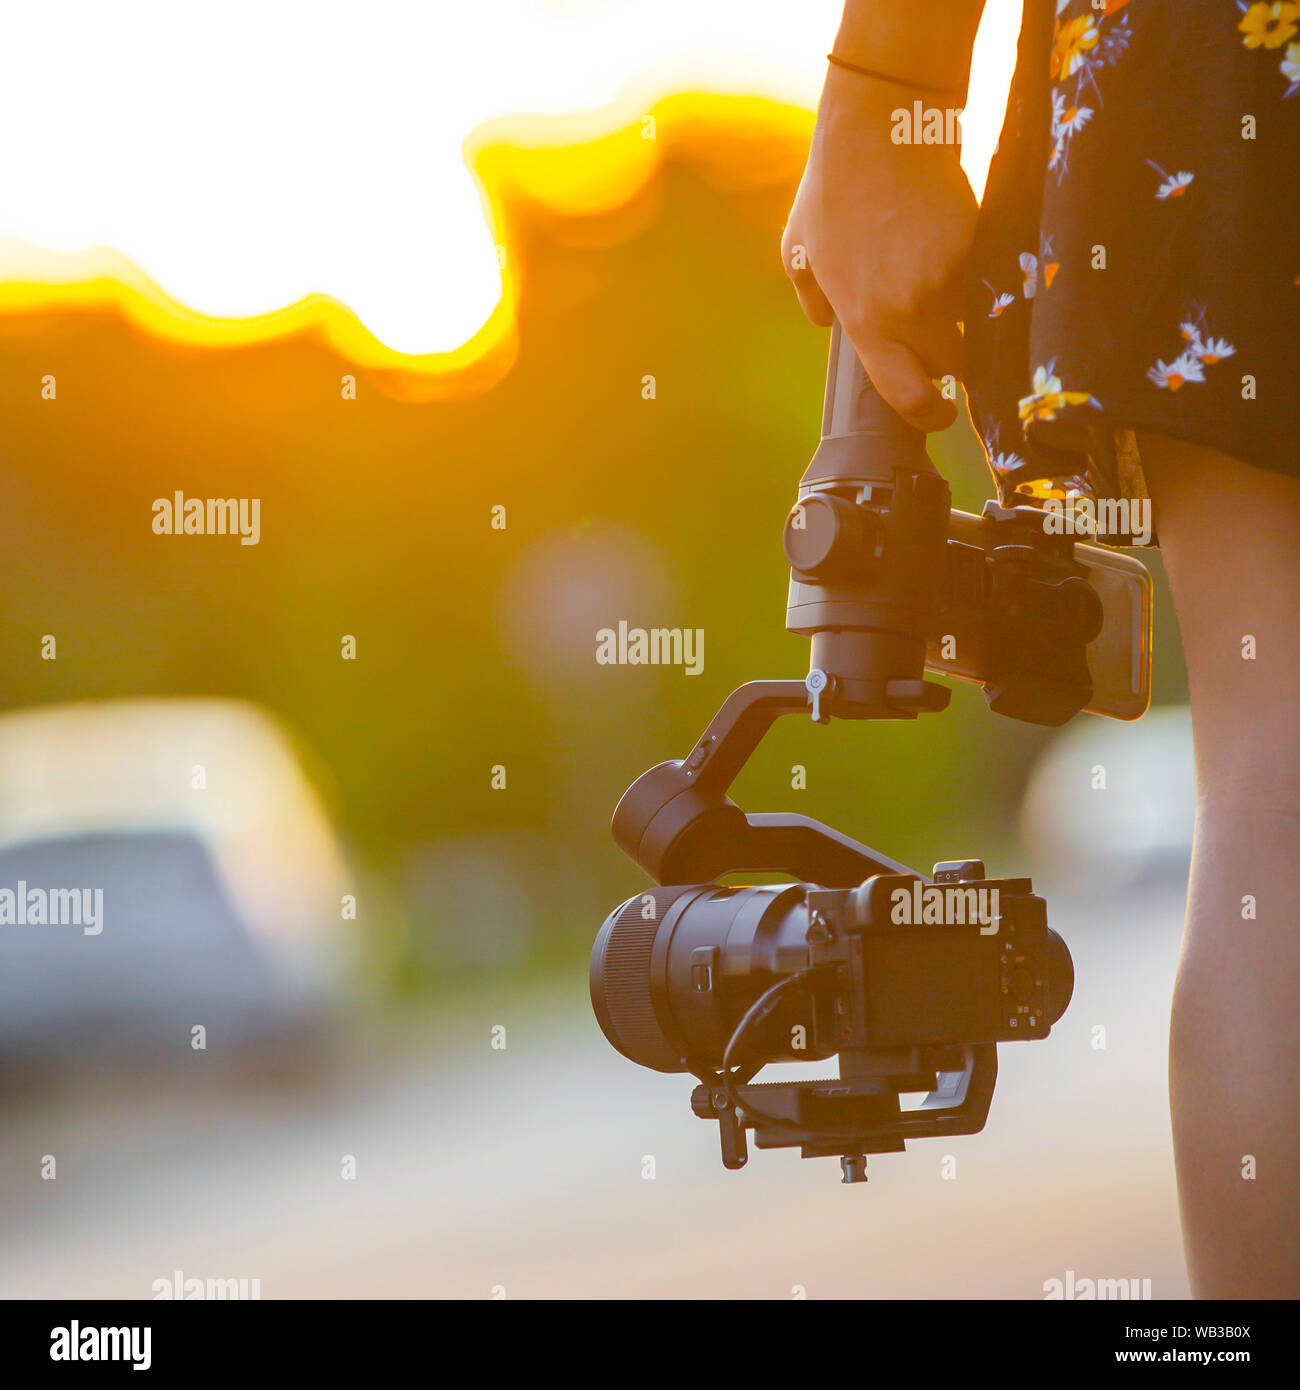 Une jeune fille tenant une caméra montée sur une tourelle gyrostabilisée. Banque D'Images